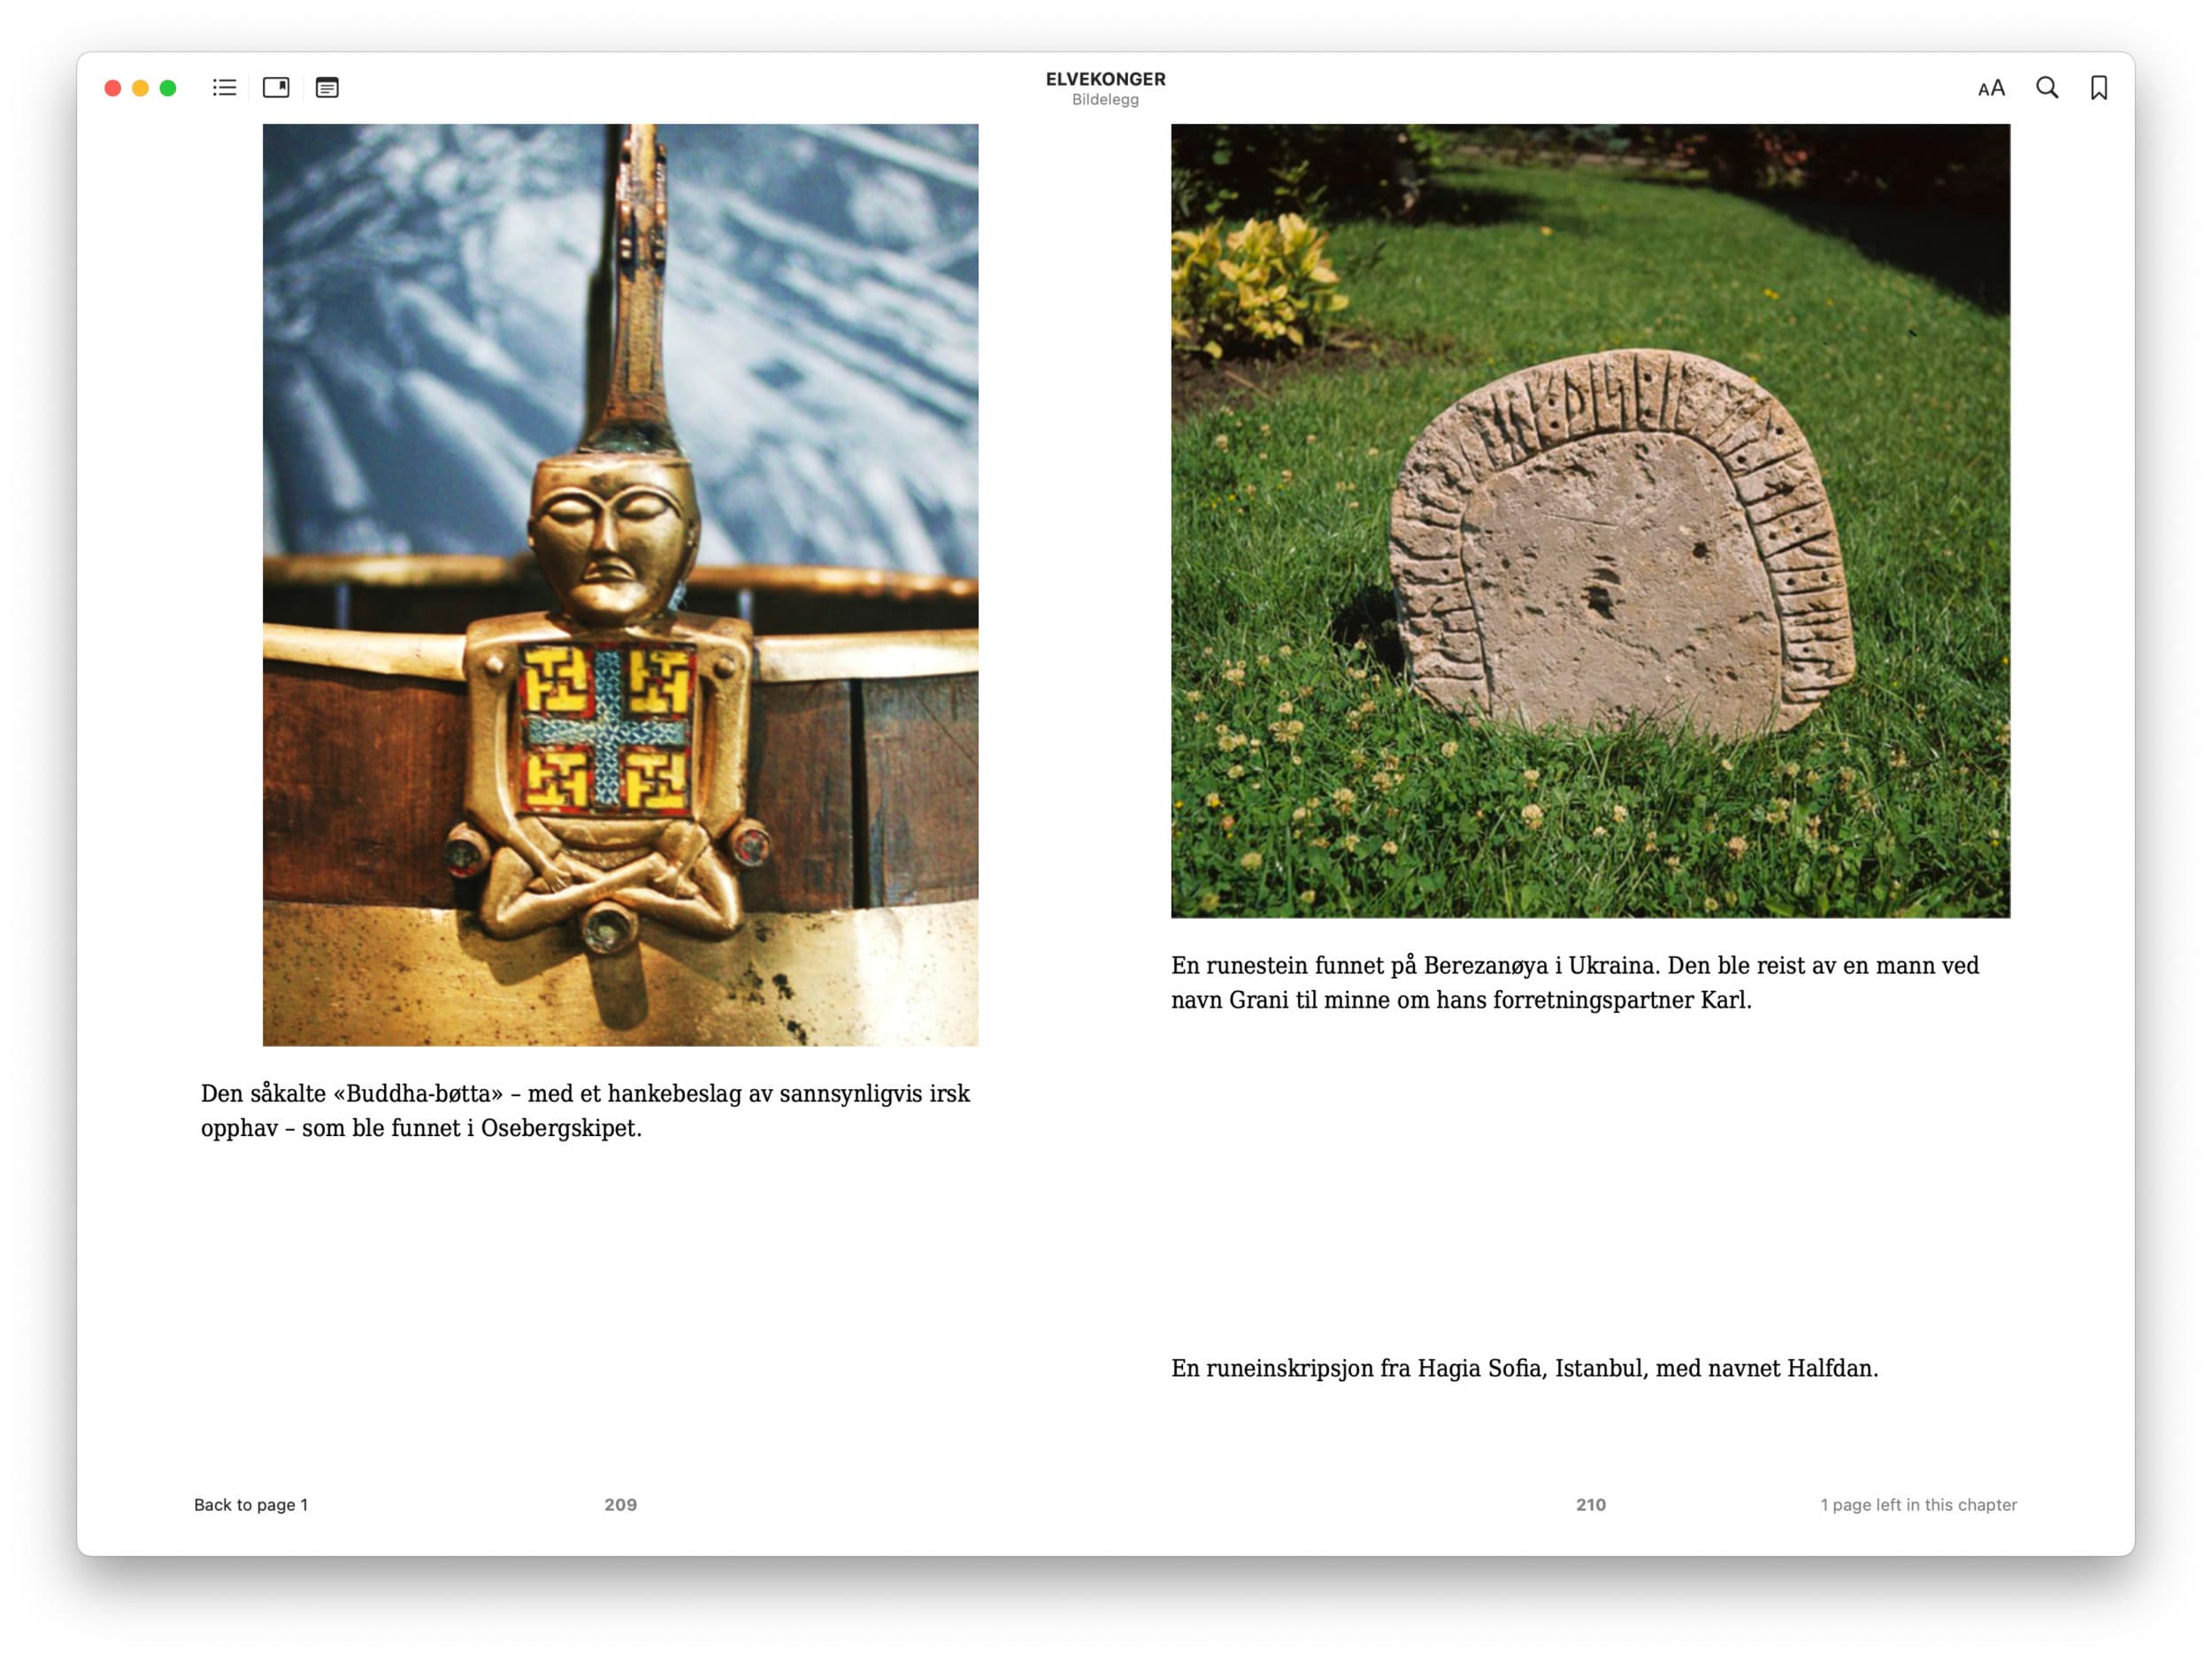 Bildet viser et oppslag av Elvekonger i en e-bok-leser. Oppslaget viser to bilder og bildetekster. Det ene bildet viser en Buddha-figur og det andre er av en stein.